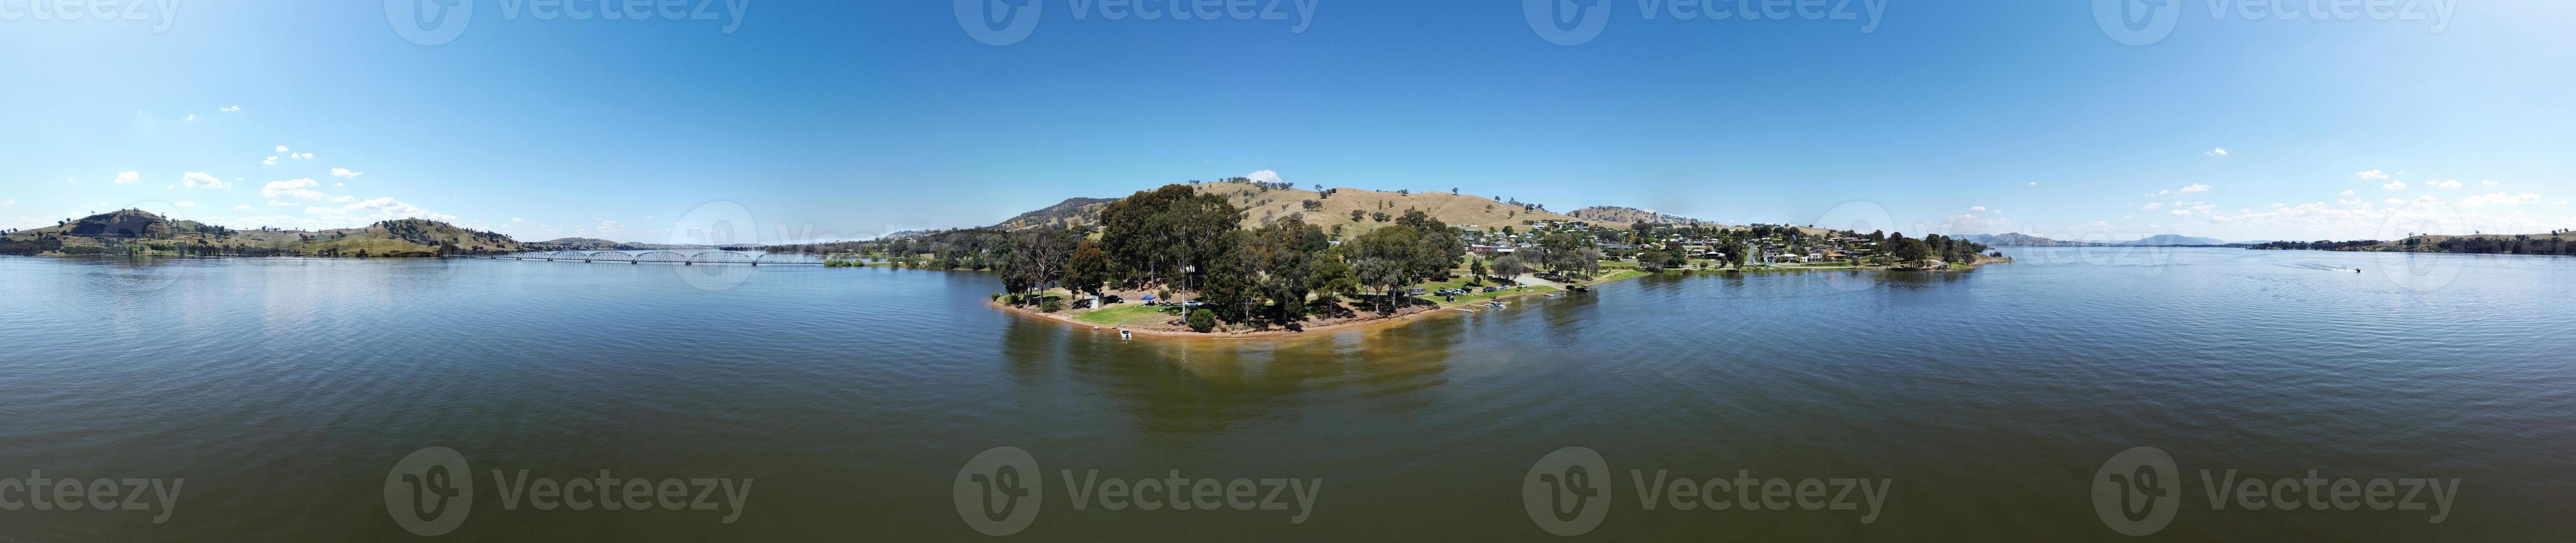 360-Grad-Fotografie mit Blick auf Lake Hume, die malerische Stadt Bellbridge, mit Blick auf die nahe gelegene Bethanga-Brücke in Albury, NSW, Australien, das ruhige Wasser, aufgenommen von einer Drohne. foto